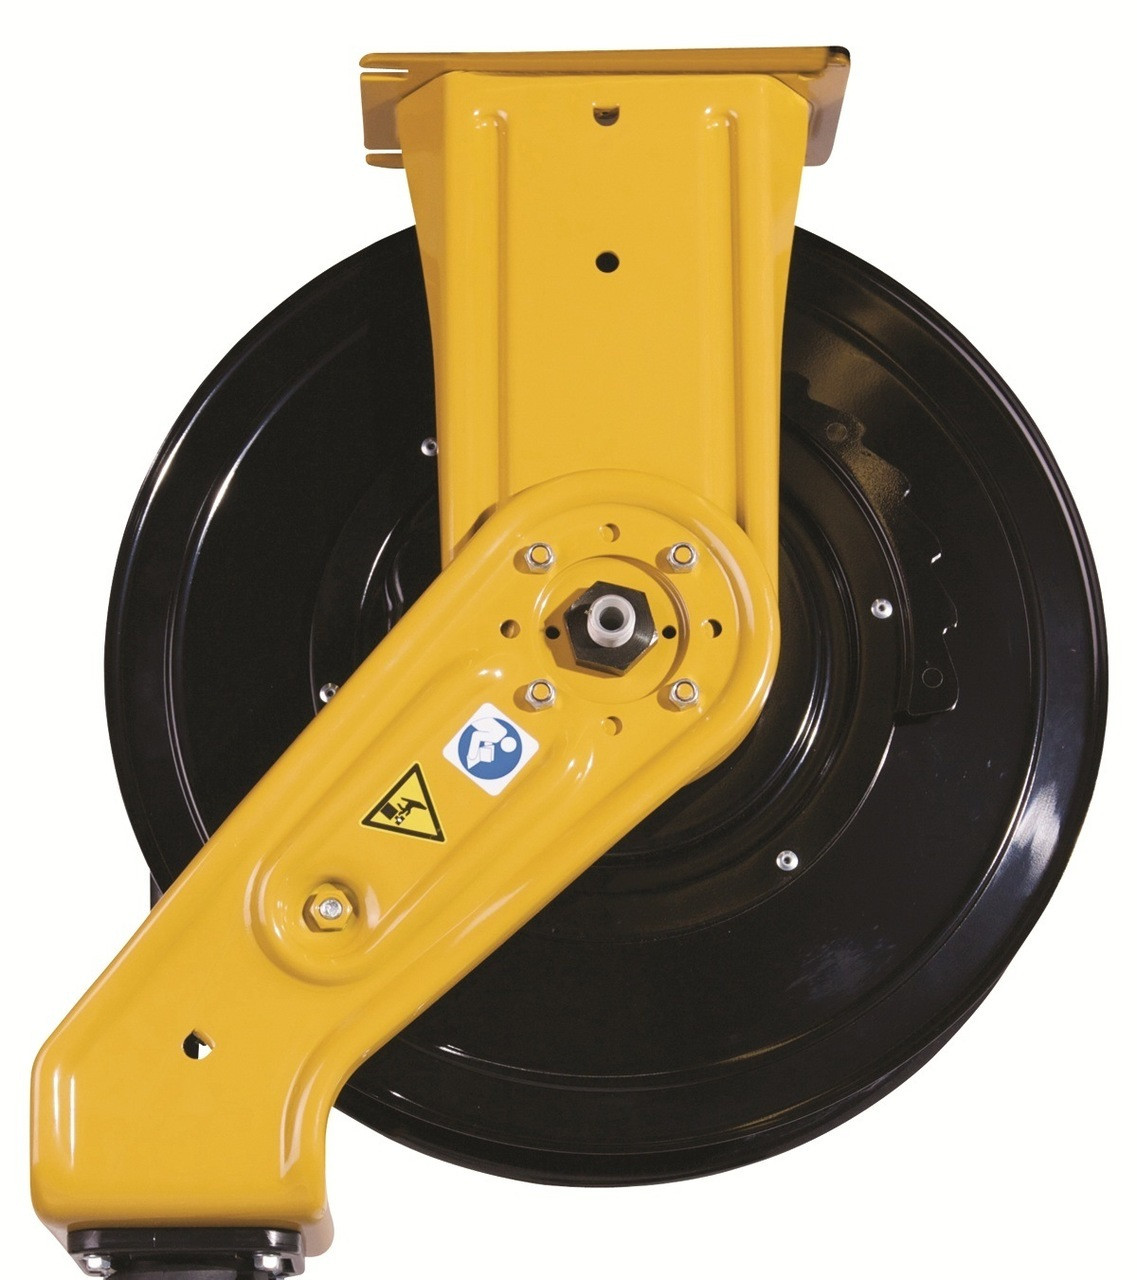 Graco SDX Series Air/Water Hose Reel Spool Repair Kits For SDH1D#, SDH15# &  SDH23#